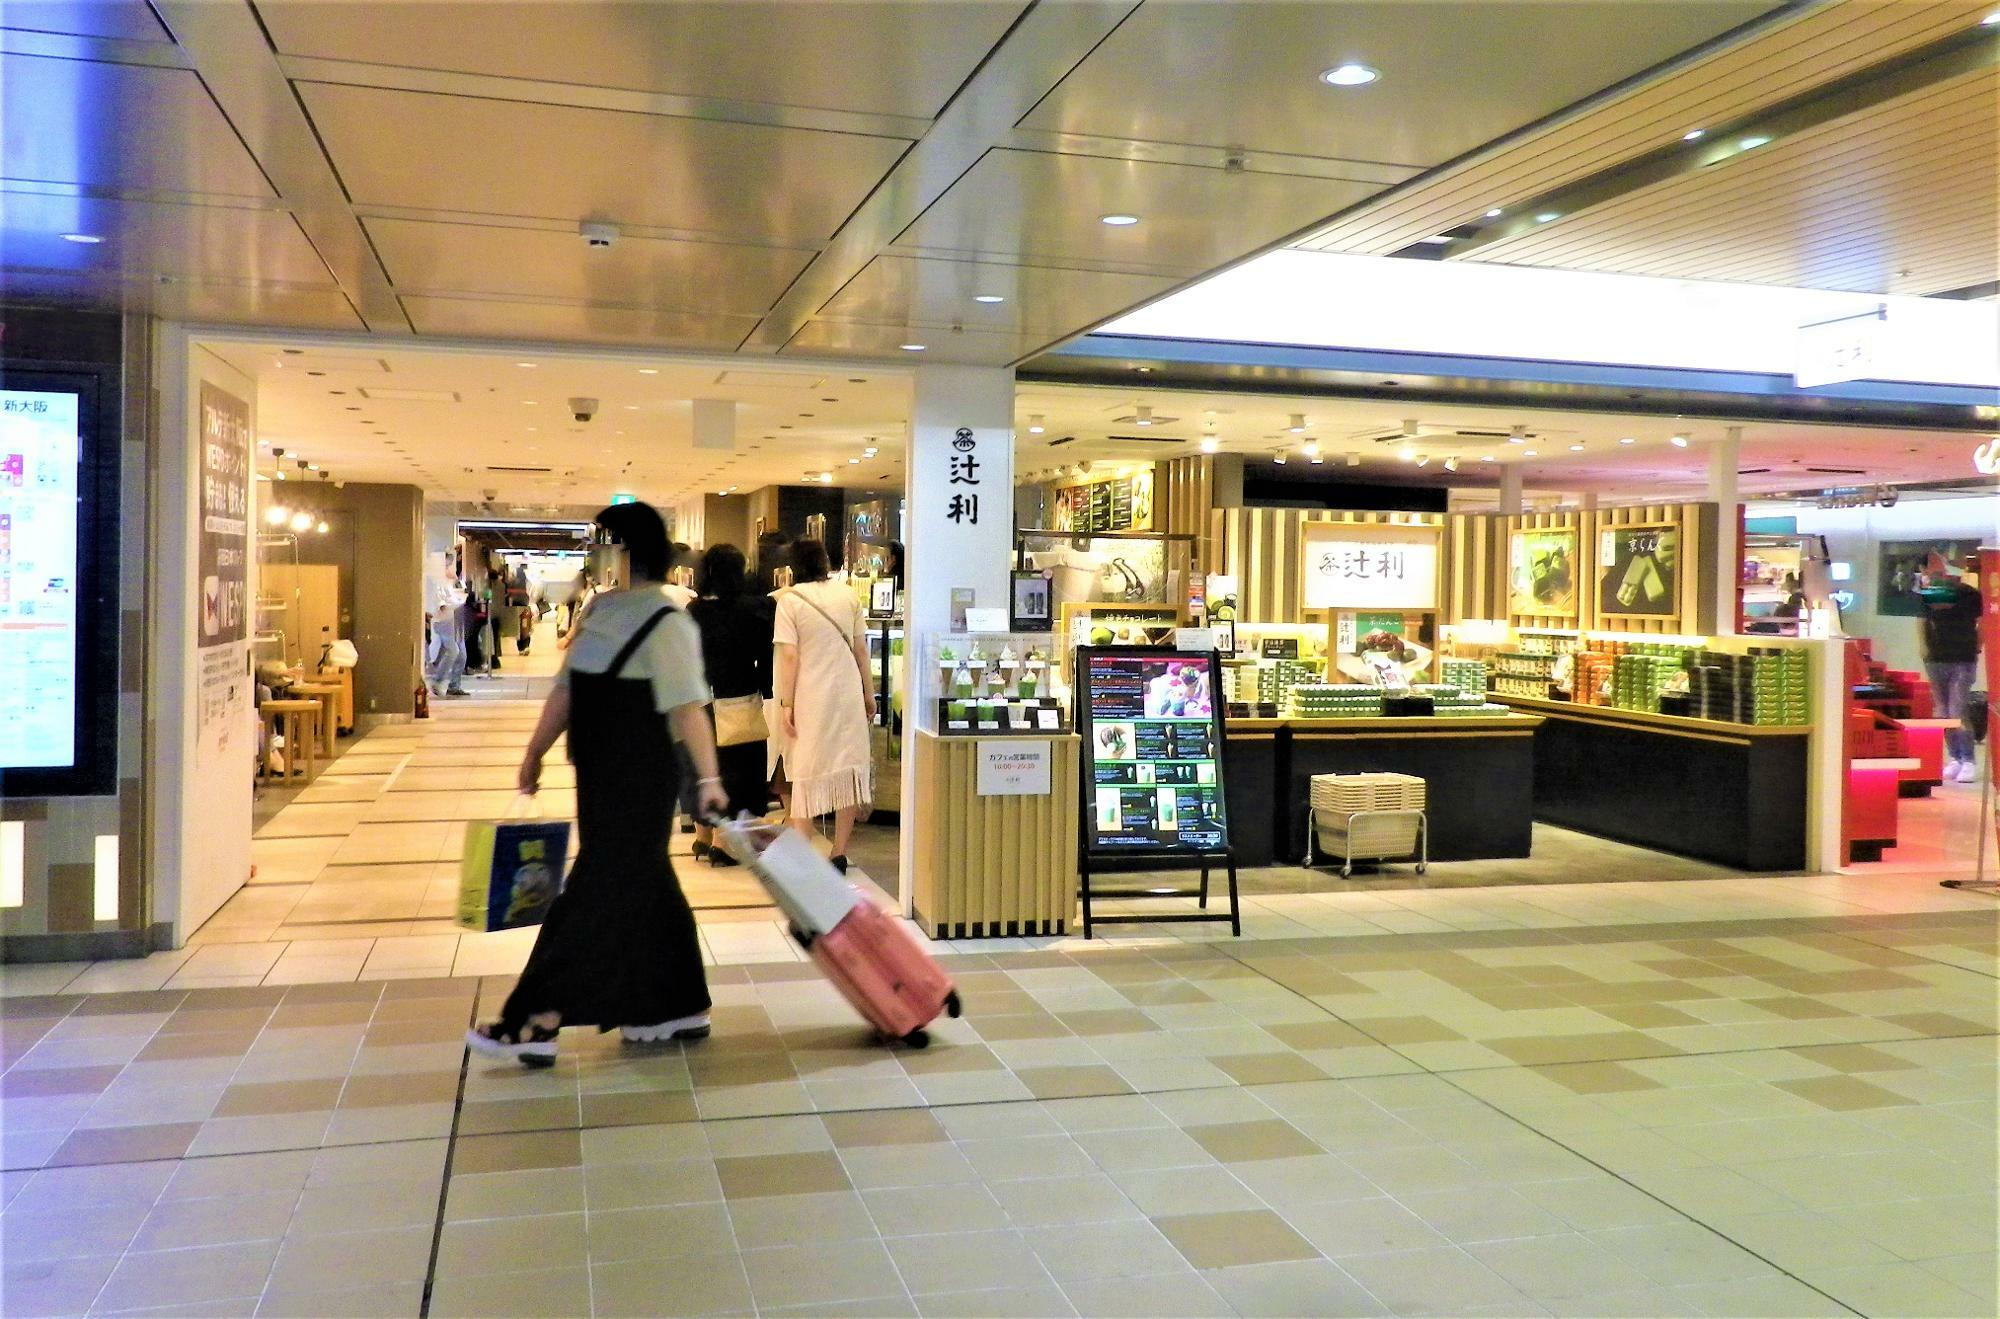 新大阪駅3階の新幹線中央入口の前のエスカレータを降りてスグです。